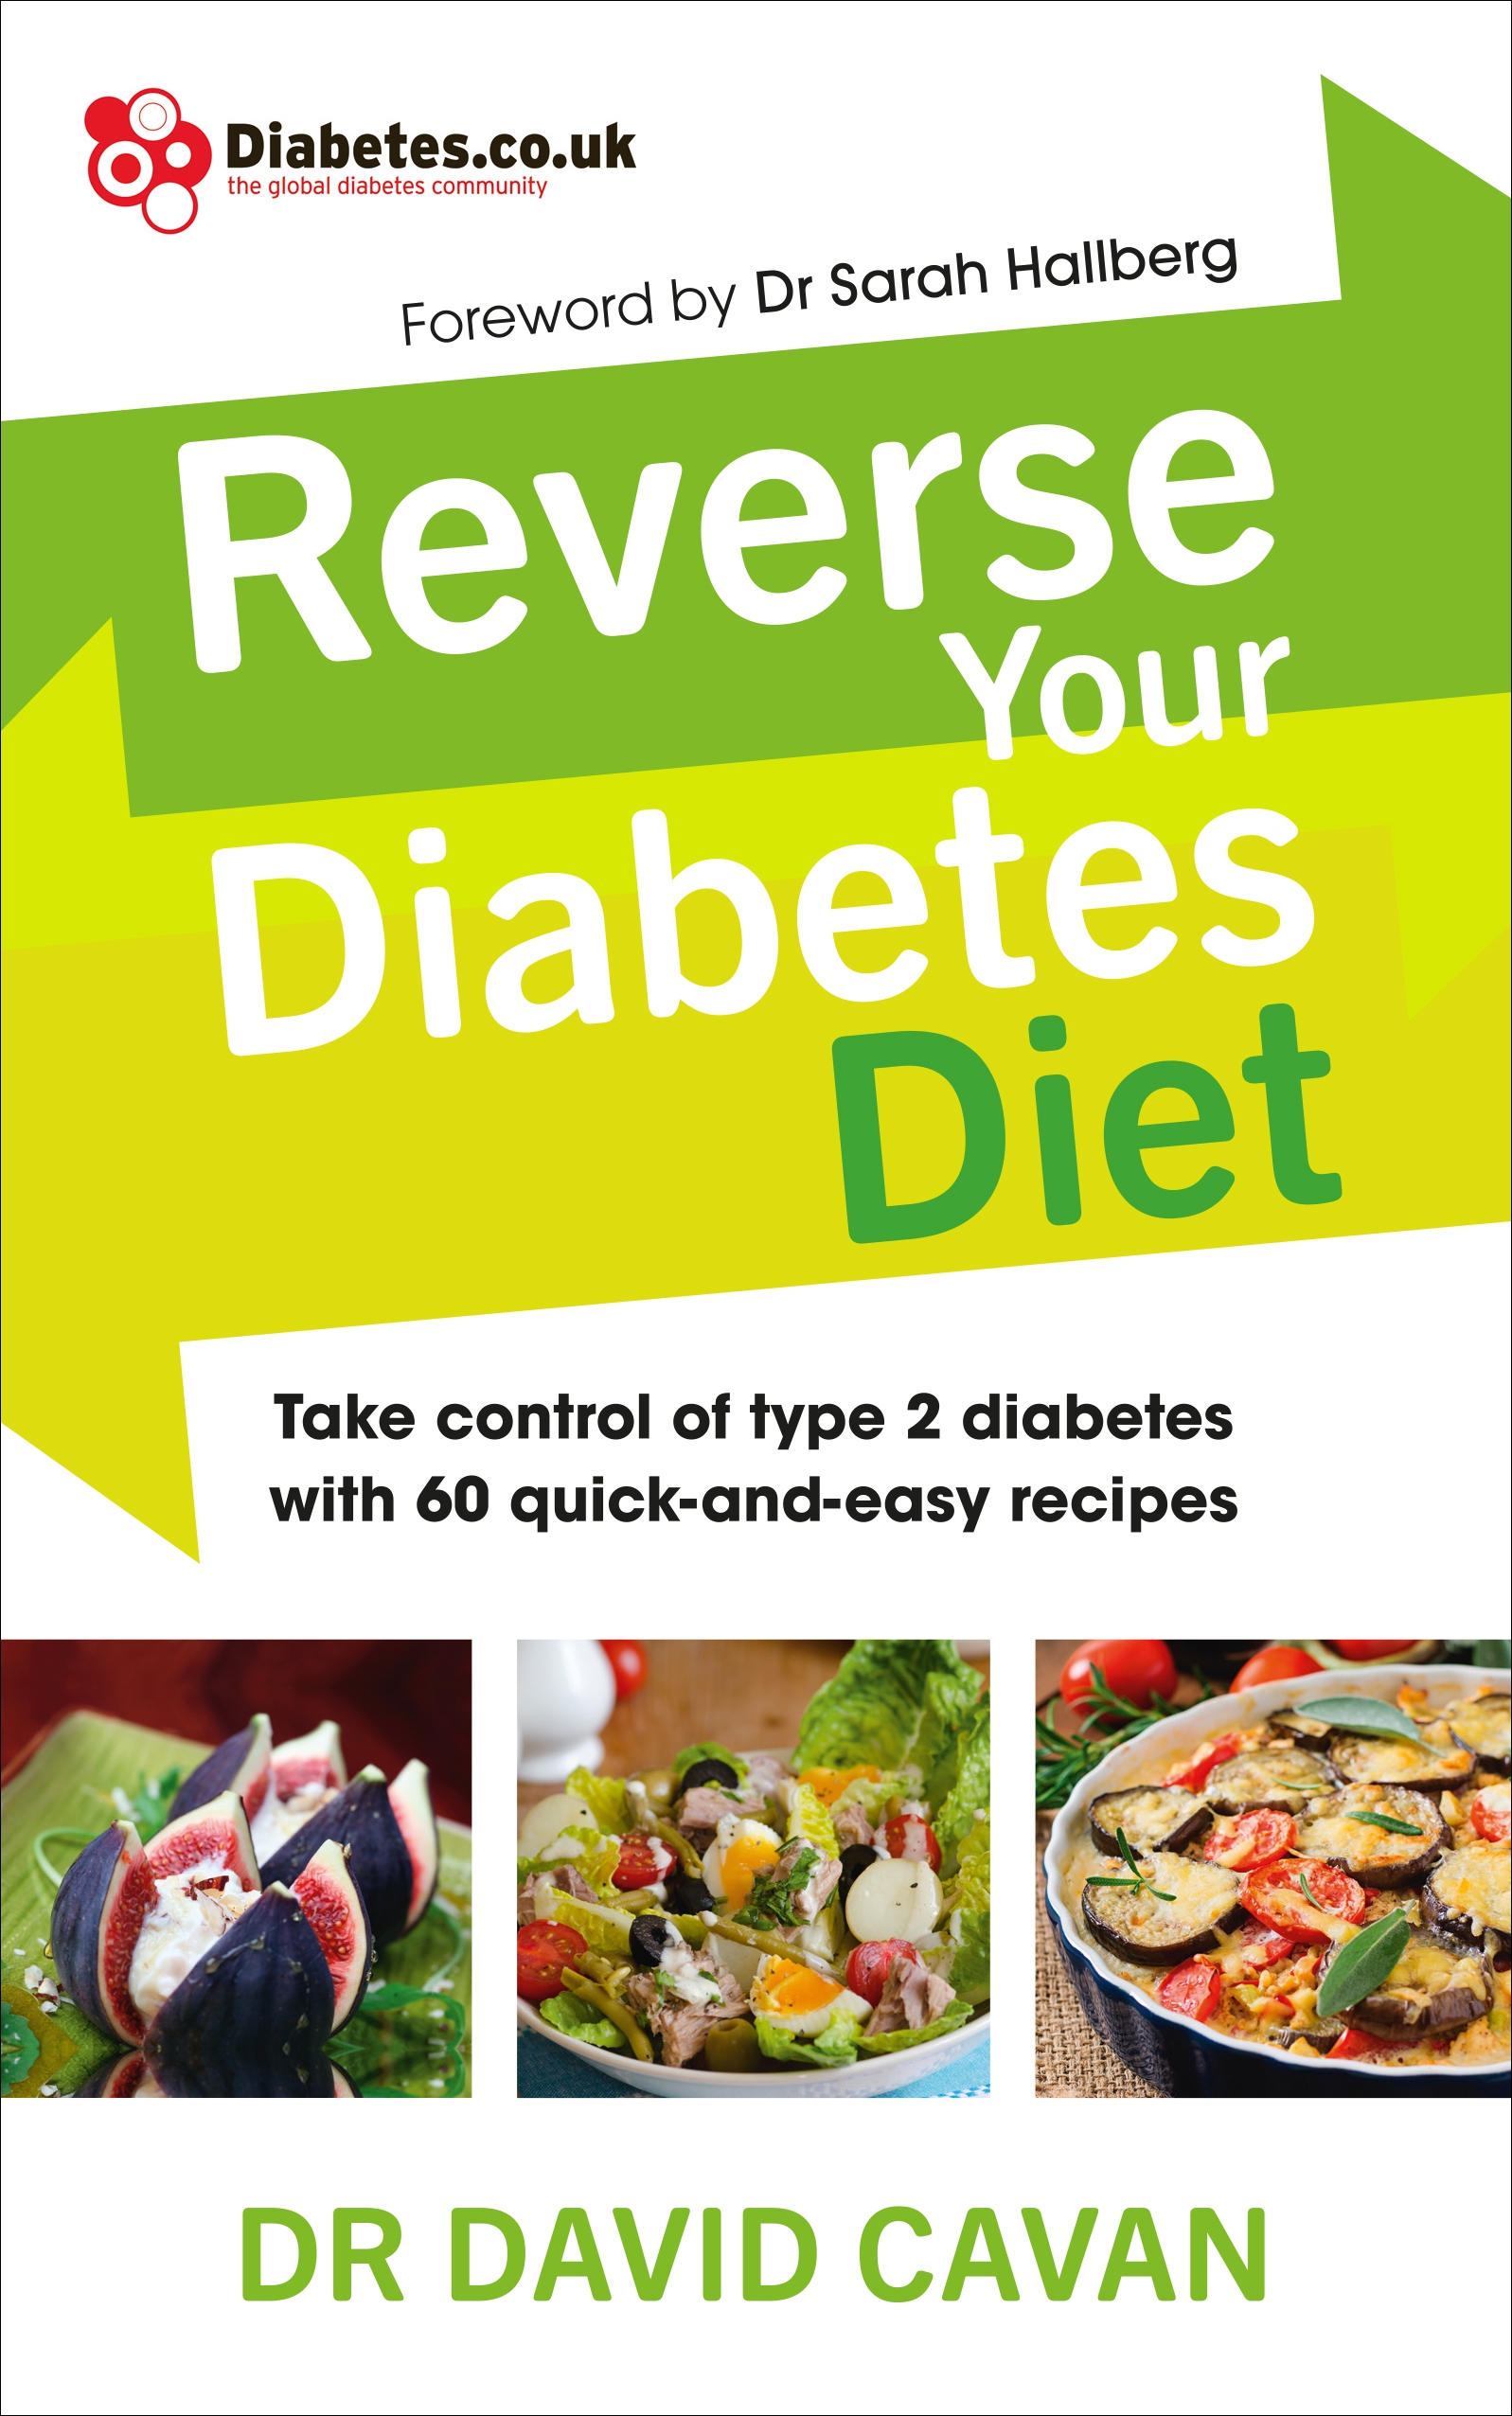 Reverse Your Diabetes Diet by David Cavan - Penguin Books Australia